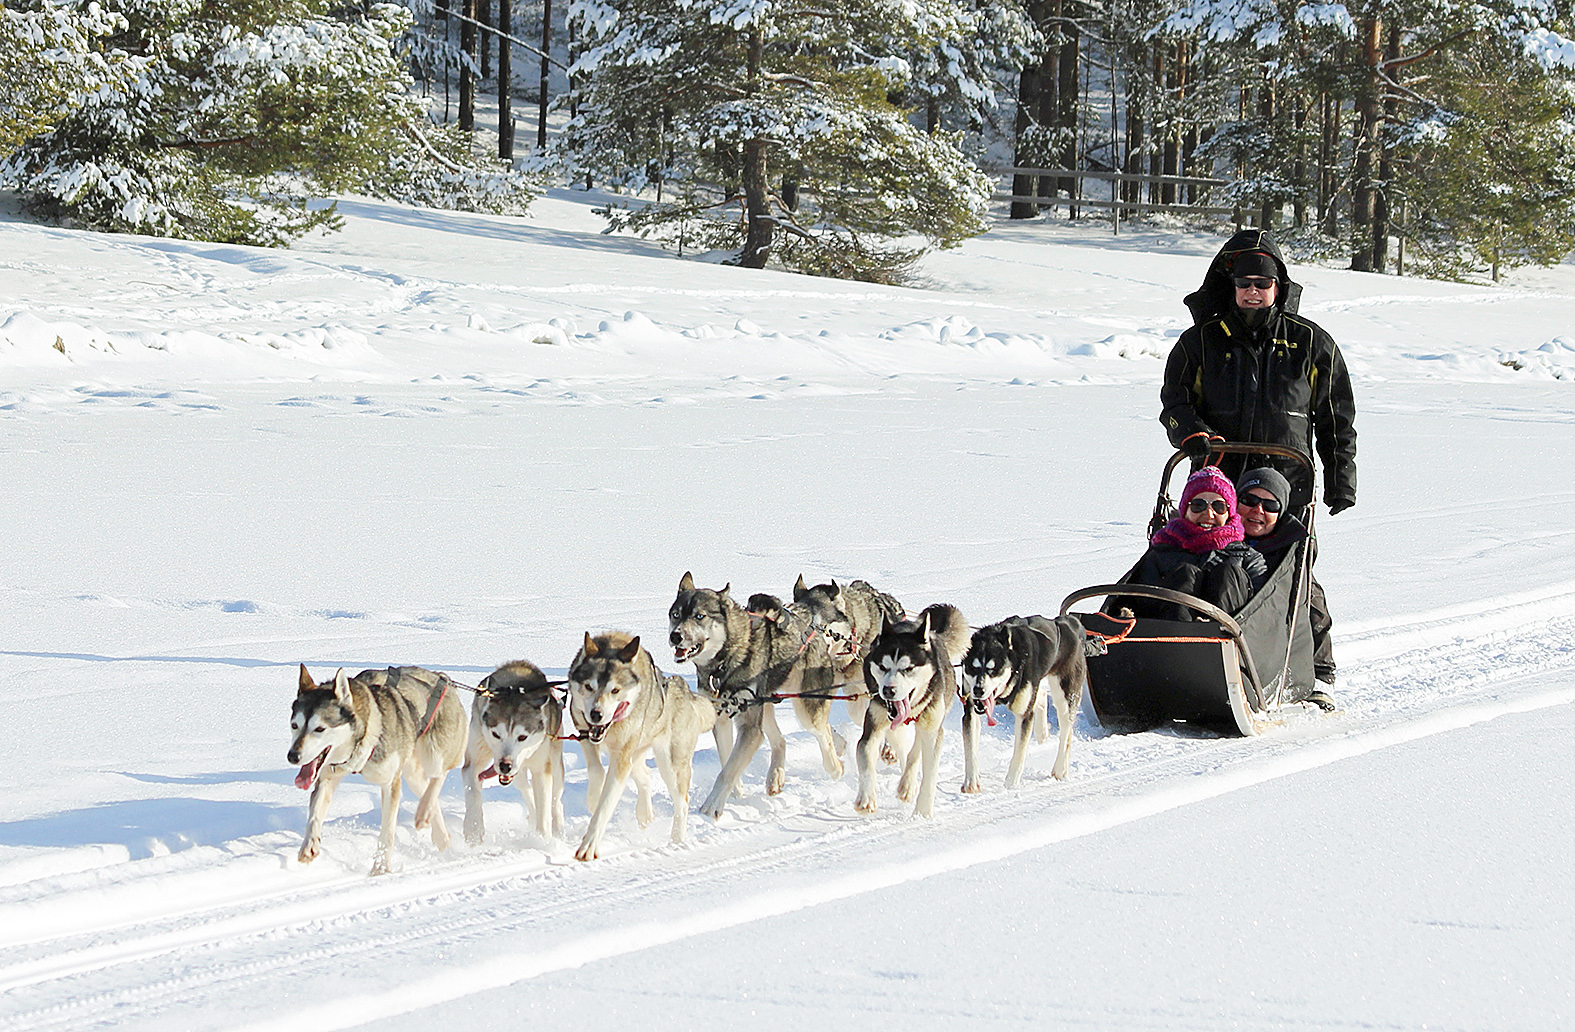 Luminen Pielisen jää, reen edessä innokkaat Pia Isomursun koirat, siinä saa kyydissä olijat kokea erilaista vauhdin hurmaa. Turisteille koiravaljakkokyyti on unohtumaton lomakokemus.
